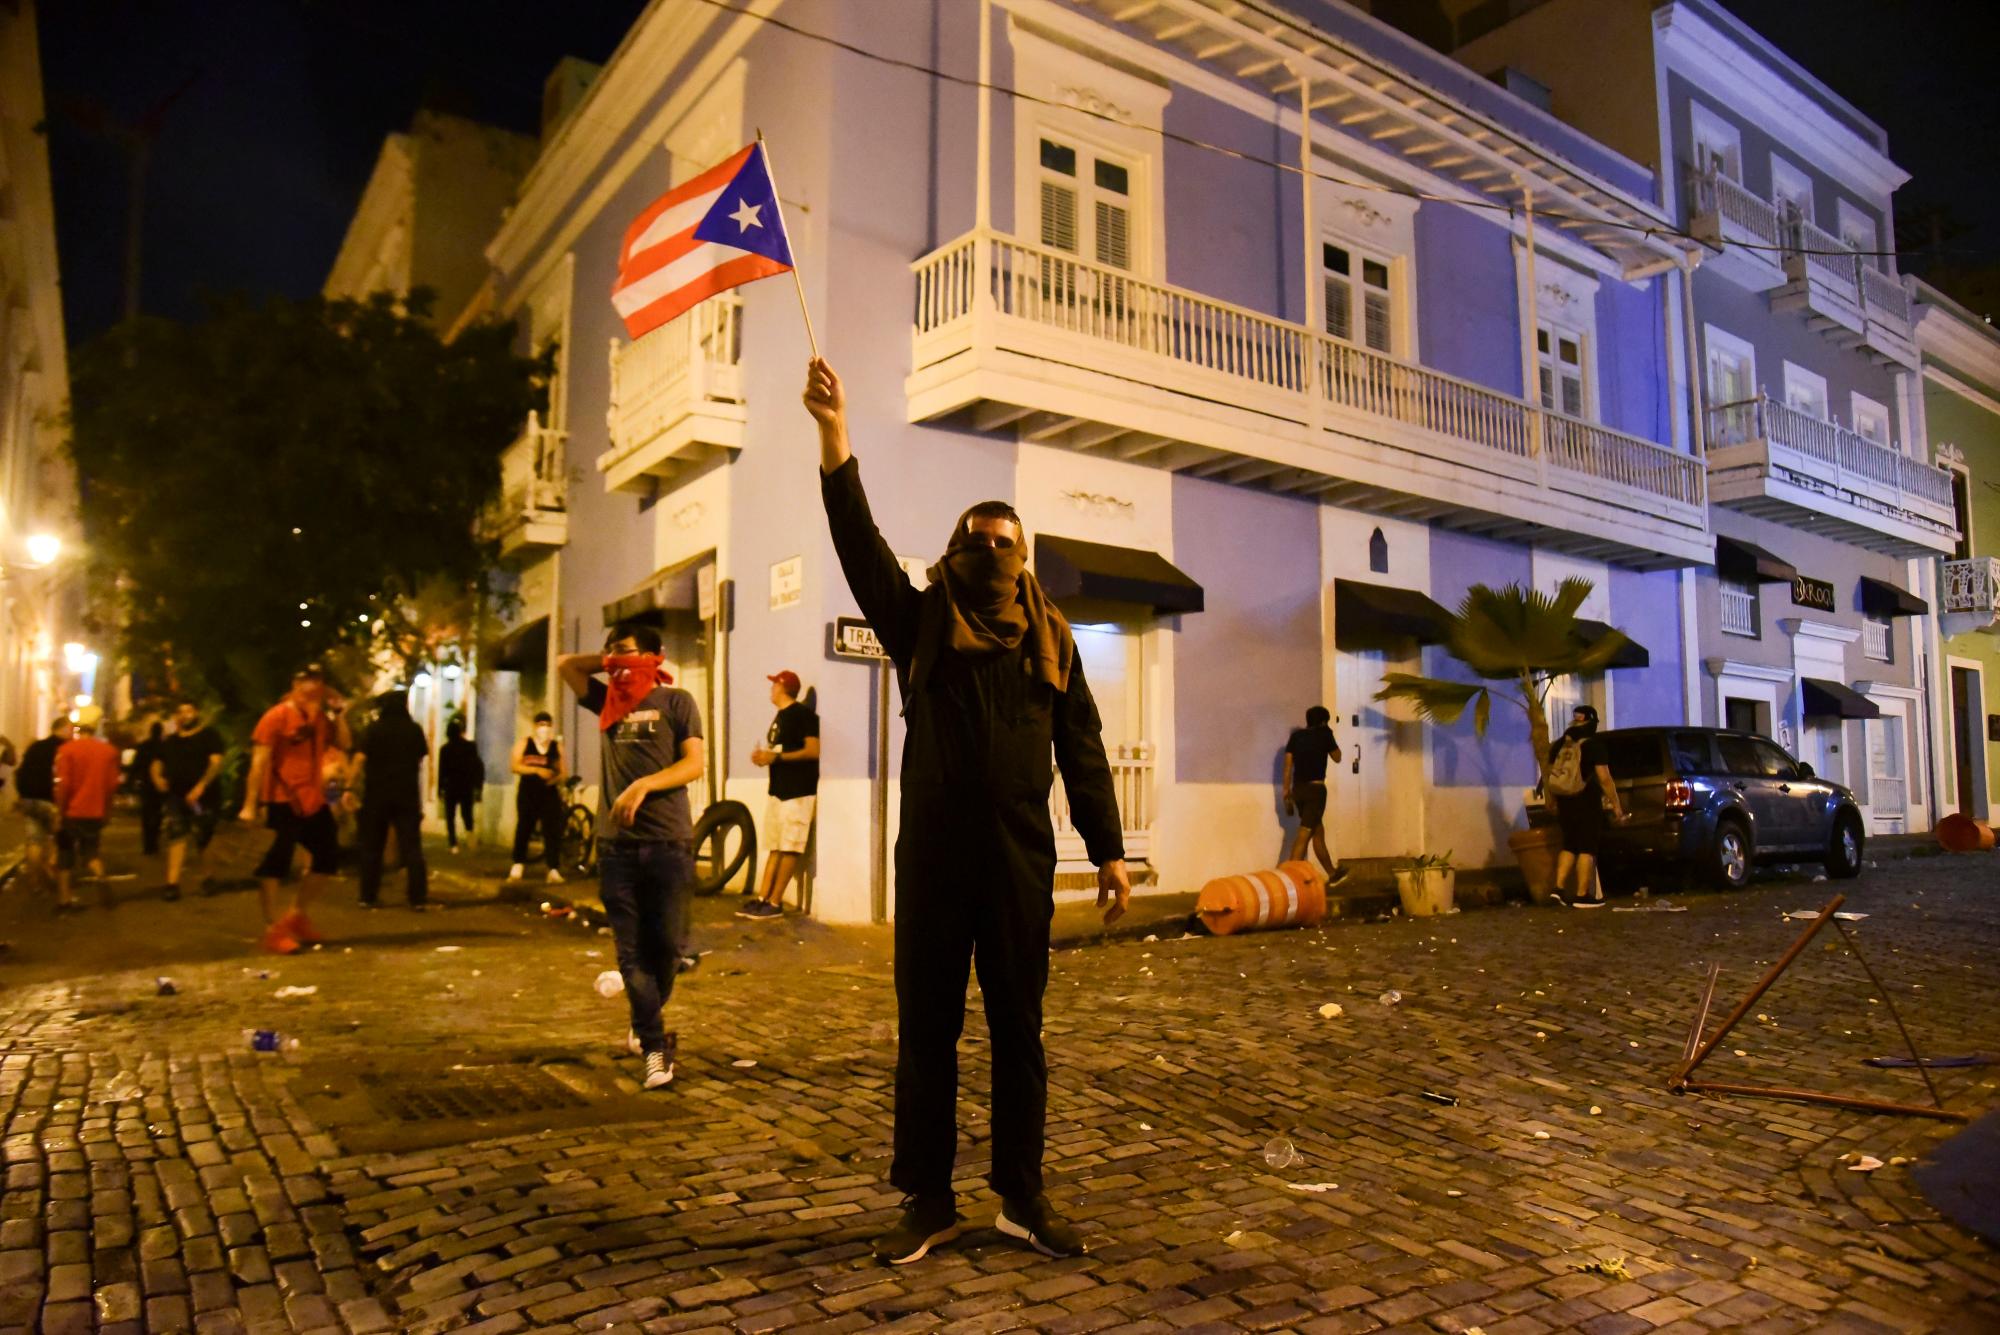 Ciudadanos cerca de la mansión ejecutiva exigieron la renuncia del gobernador Ricardo Rossello, en San Juan, Puerto Rico, el lunes 15 de julio de 2019.